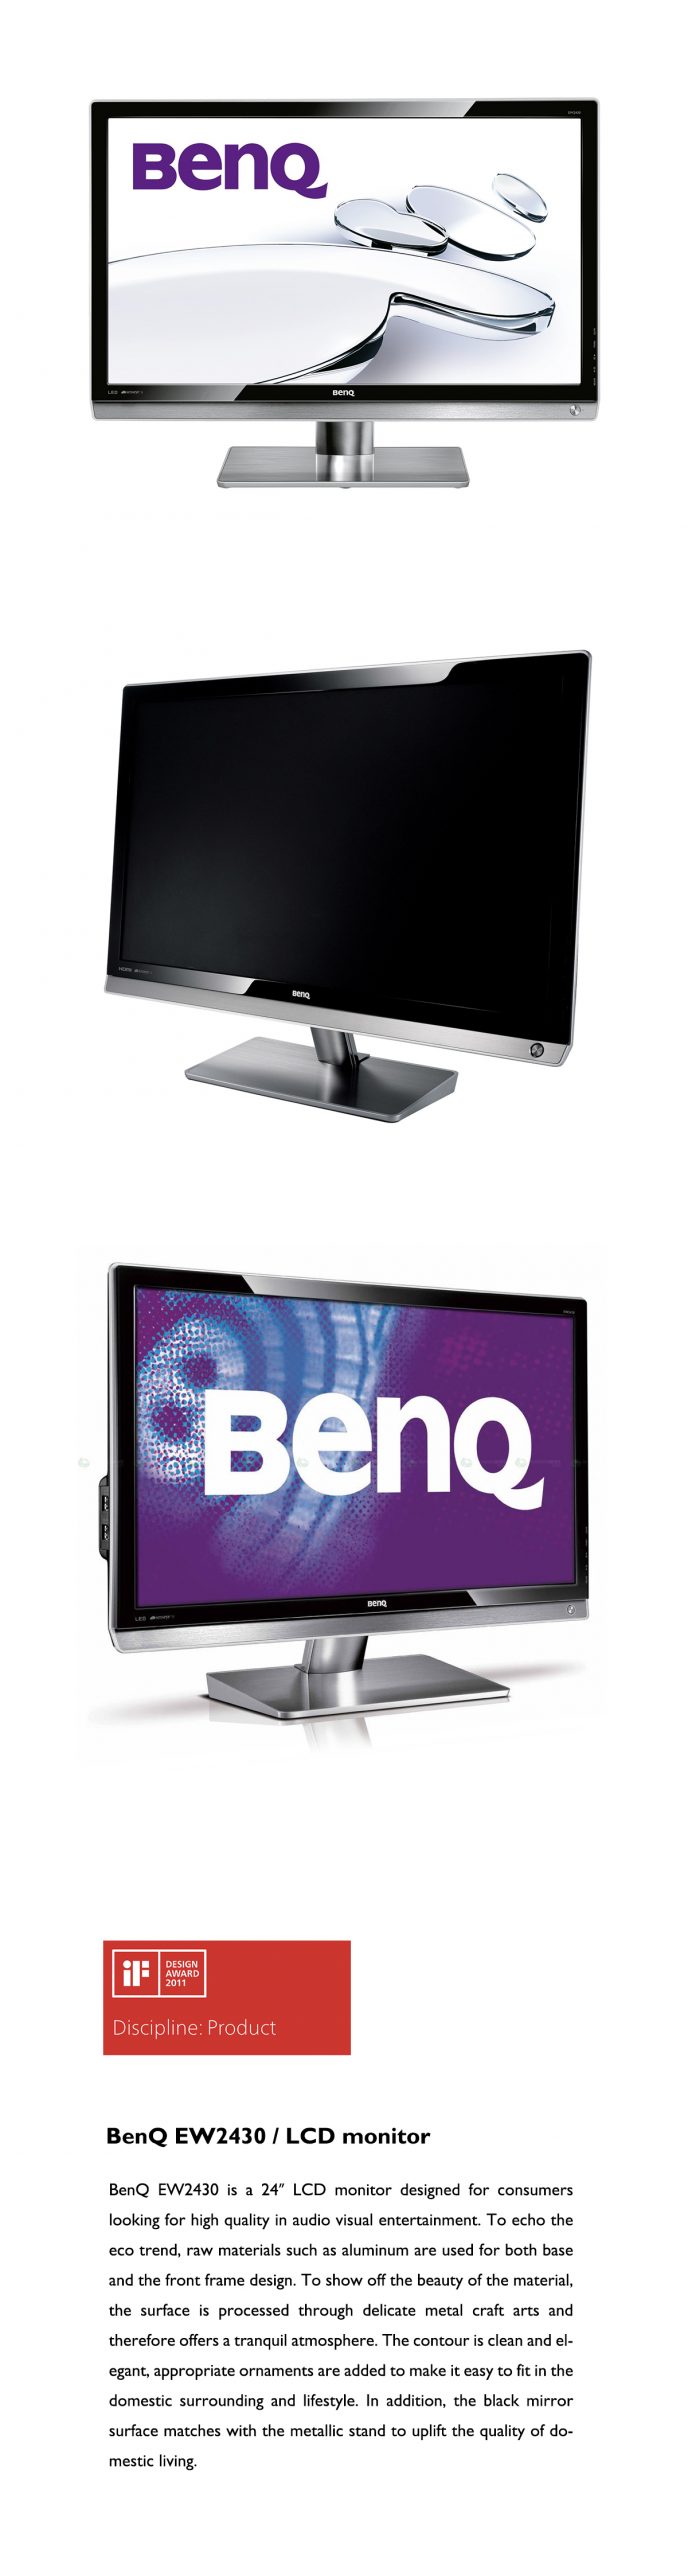 明基BenQ EW2430 液晶显示器 ｜ 获颁2011 iF Design Award设计大奖